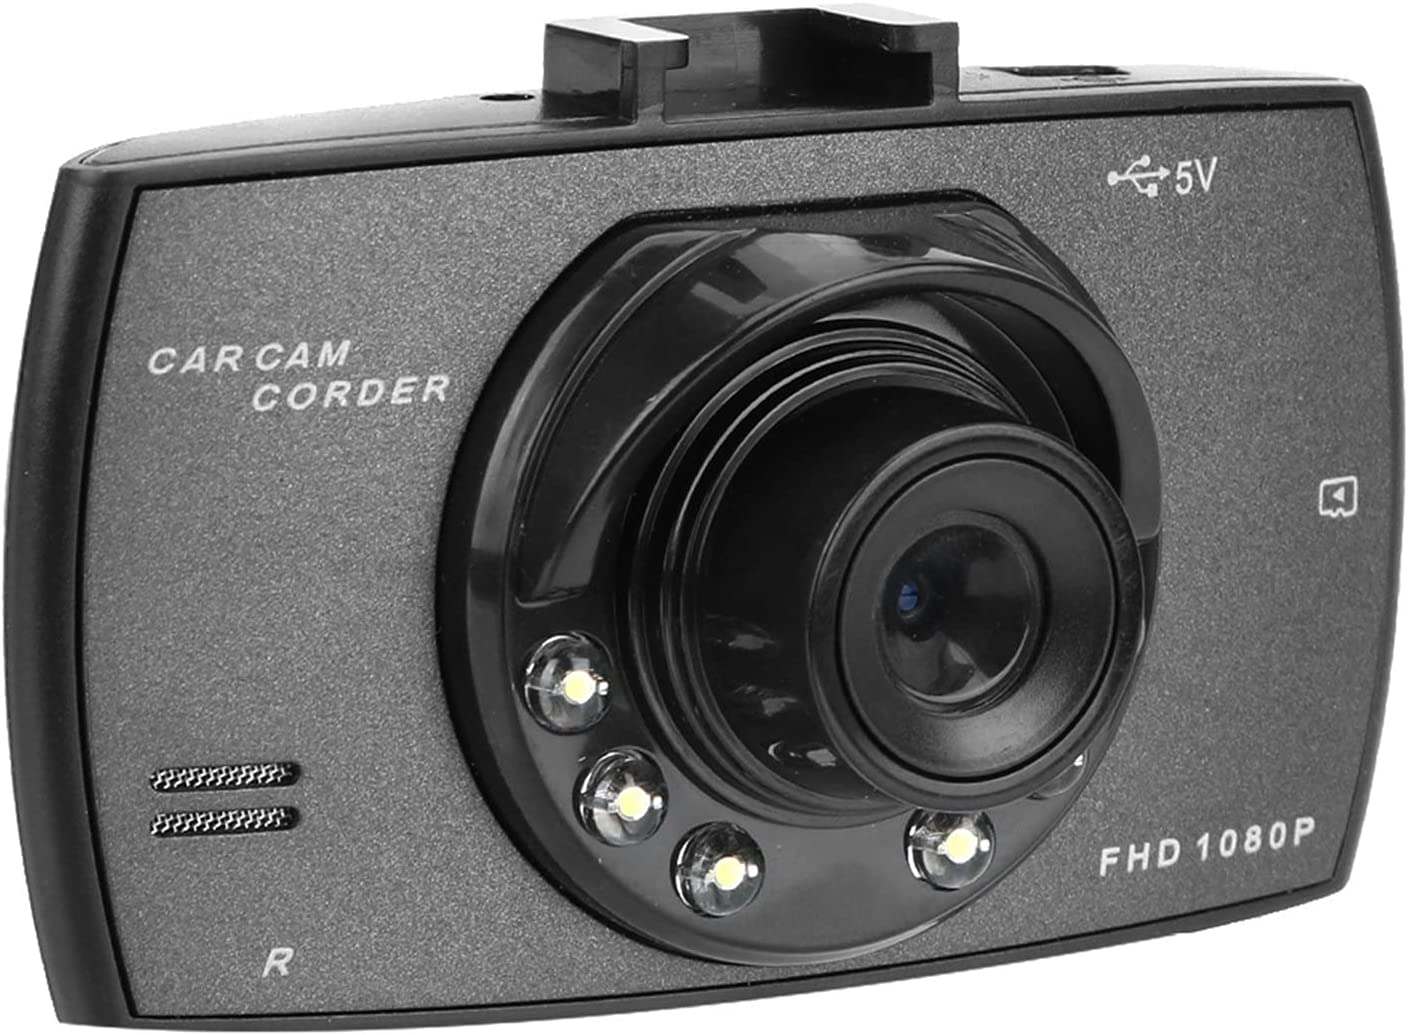 SmartTechShopping dash camera 16G Car Camcorder, KOVOSCJ Dash Camera for Cars, Full HD 1080P Dashcam, Video Registrars 120 Degree Car DVR Camera